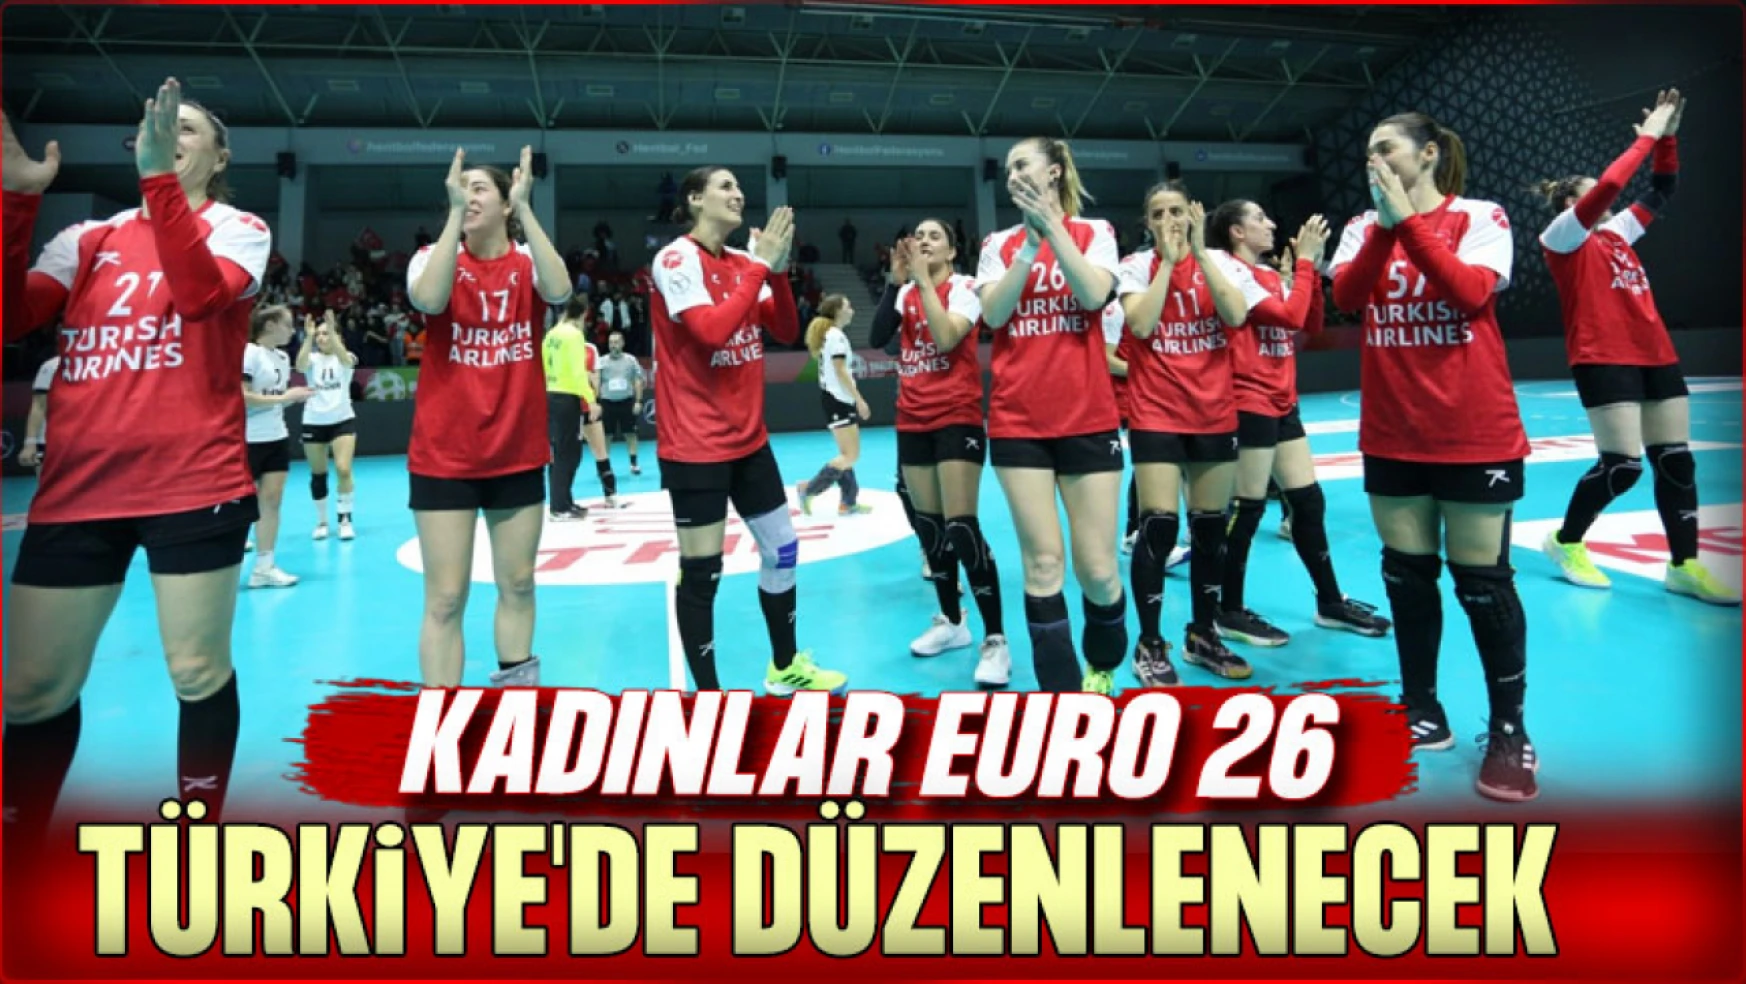 Kadınlar EURO 26, Türkiye'de Düzenlenecek!